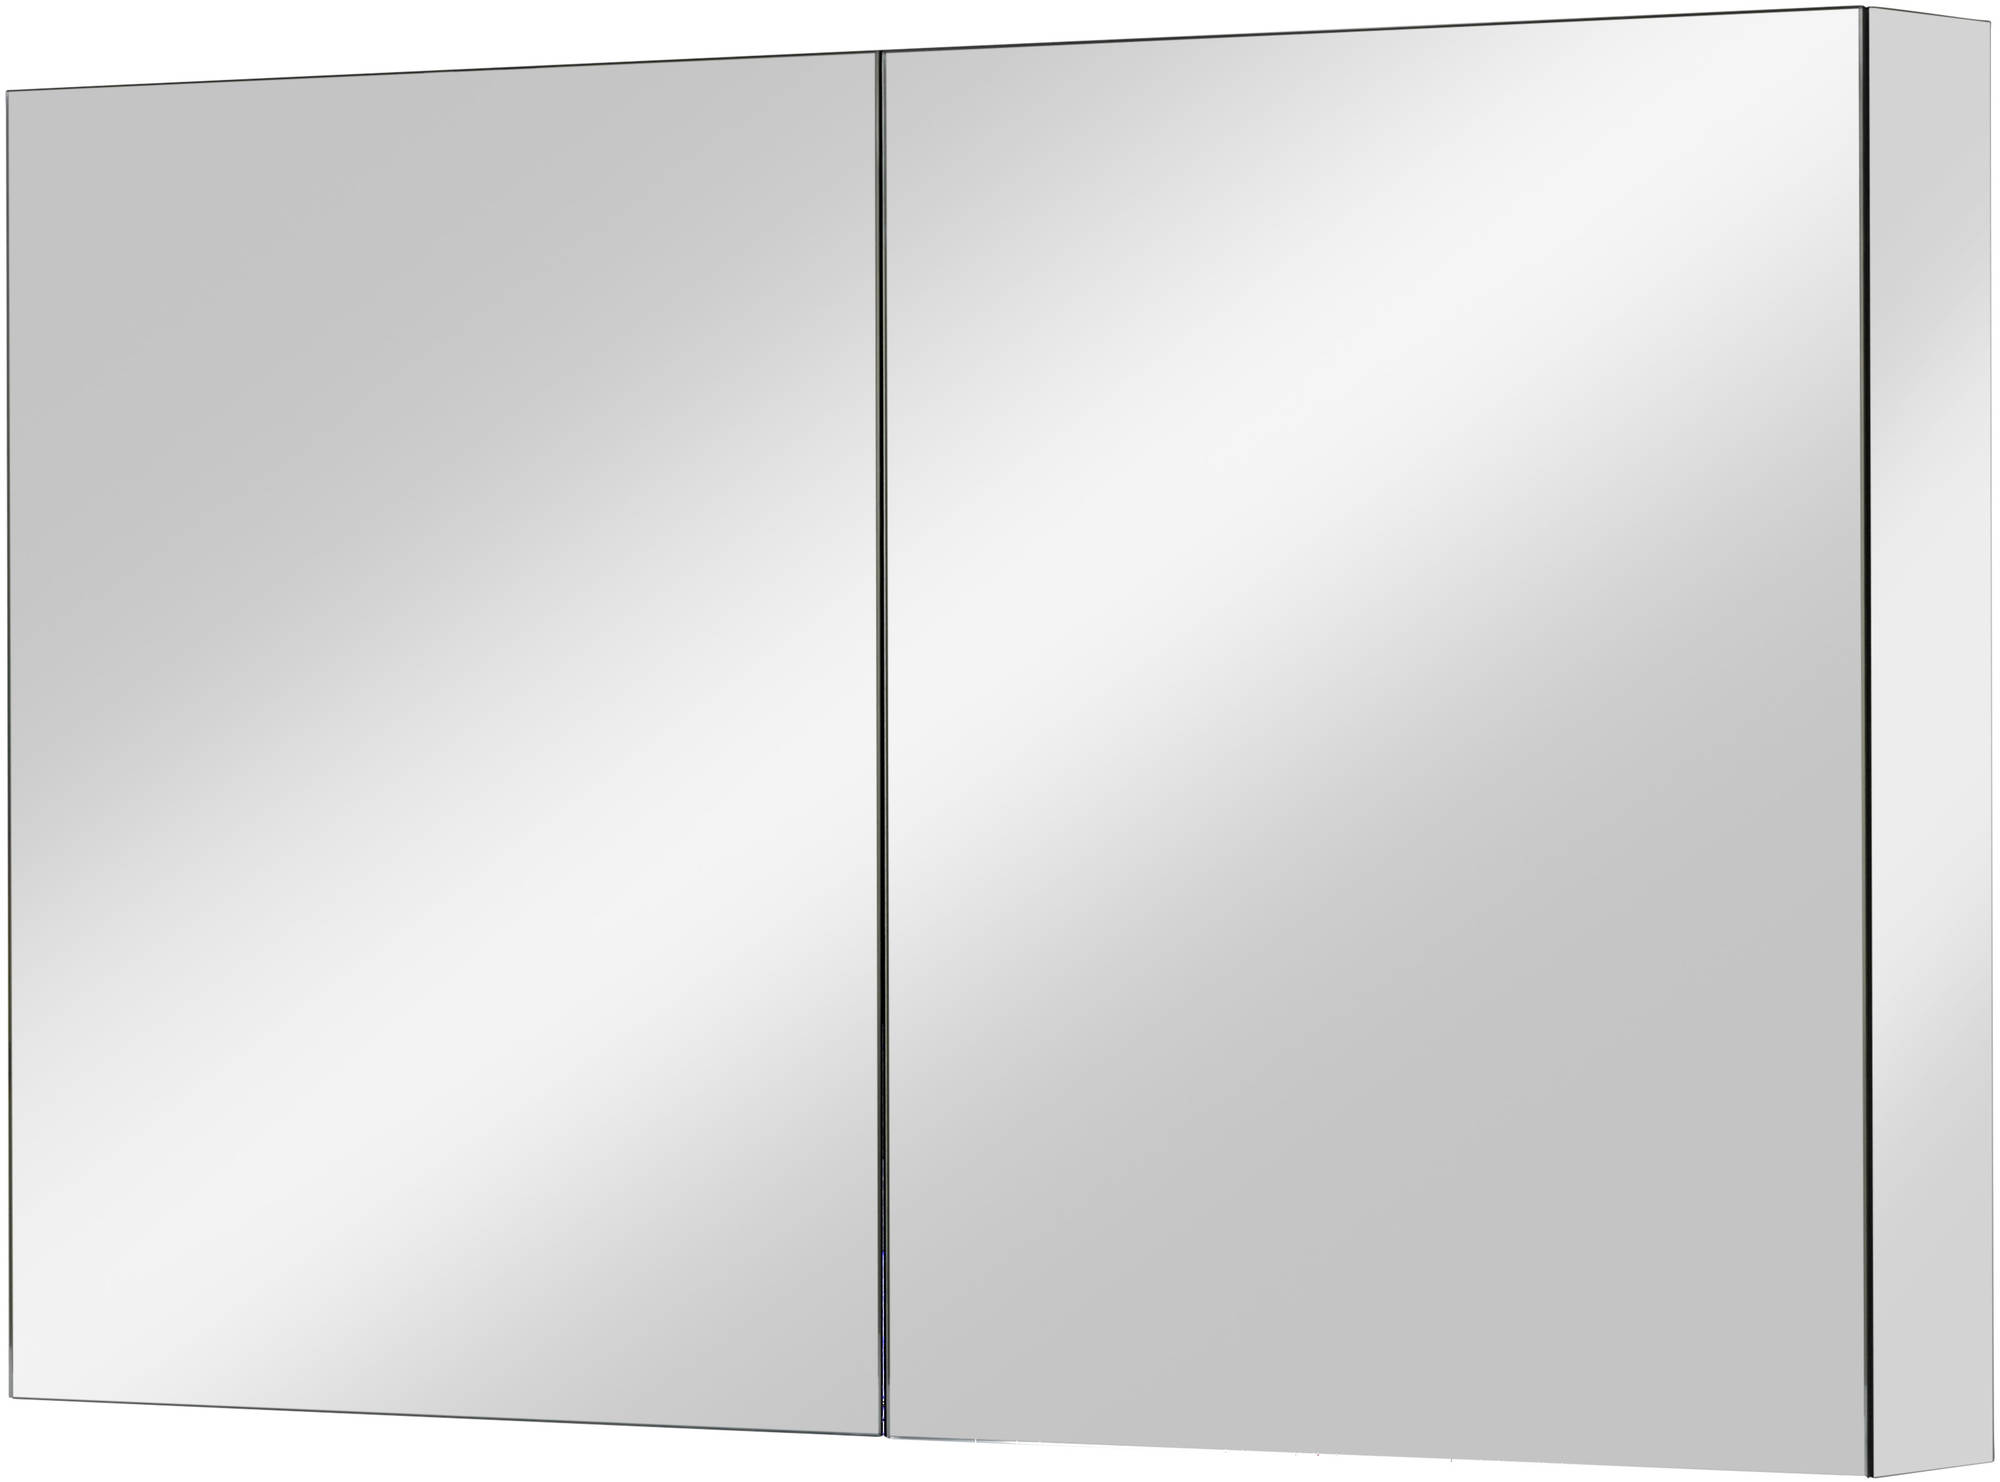 Ben Vario spiegelkast,2 gelijke delen,100x14x75cm, spiegelmelamine omtrokken zijpanelen